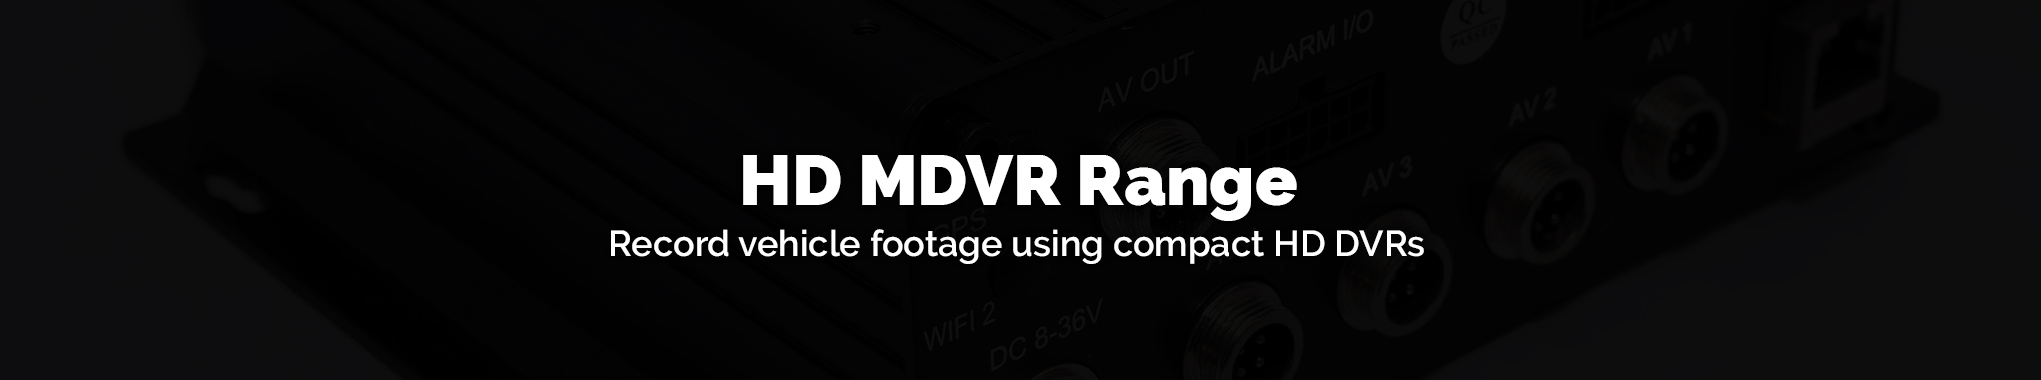 MDVR Range 4 channels